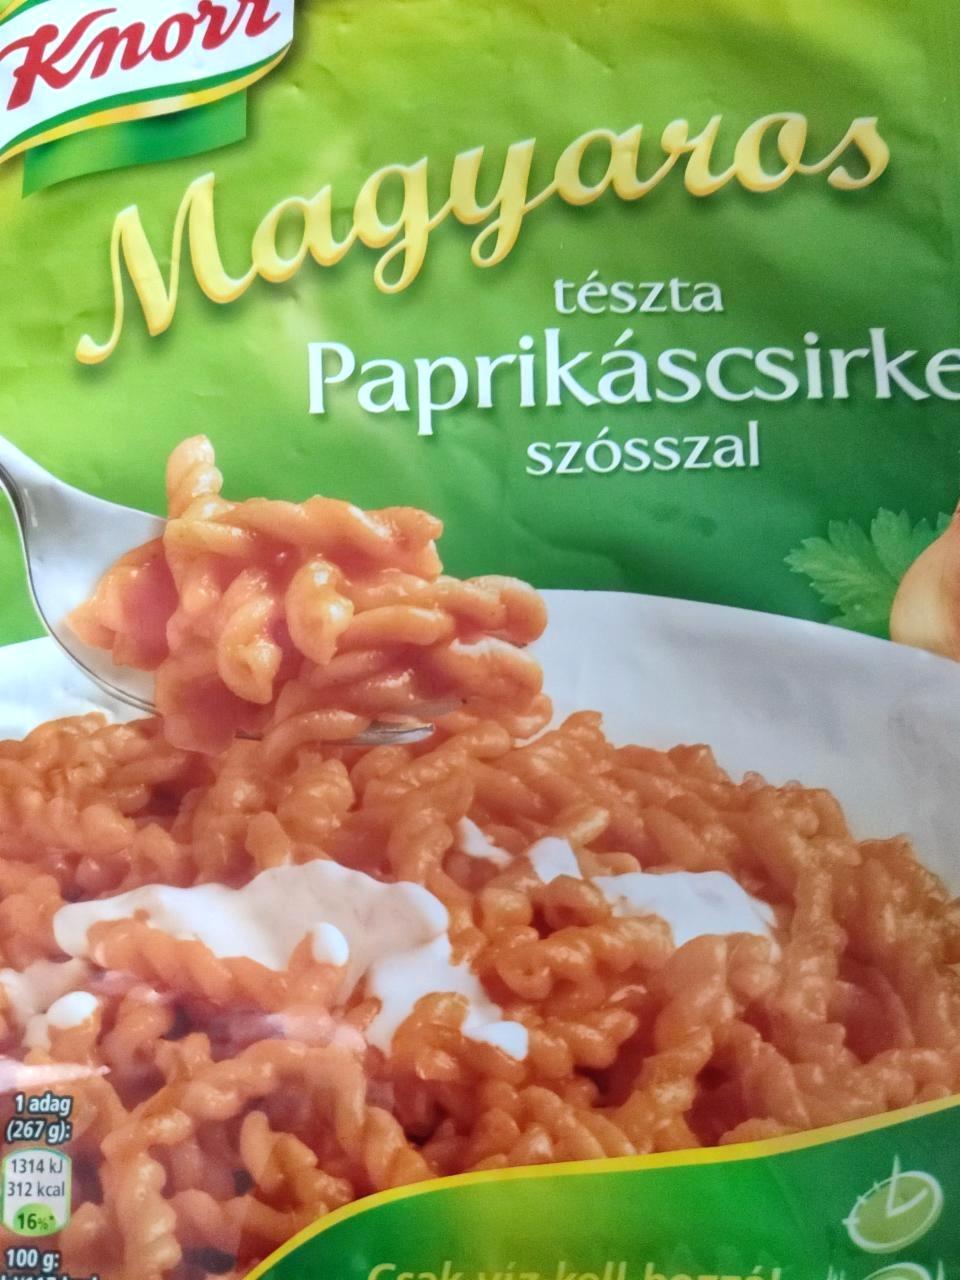 Képek - Magyaros tészta paprikáscsirke szósszal Knorr